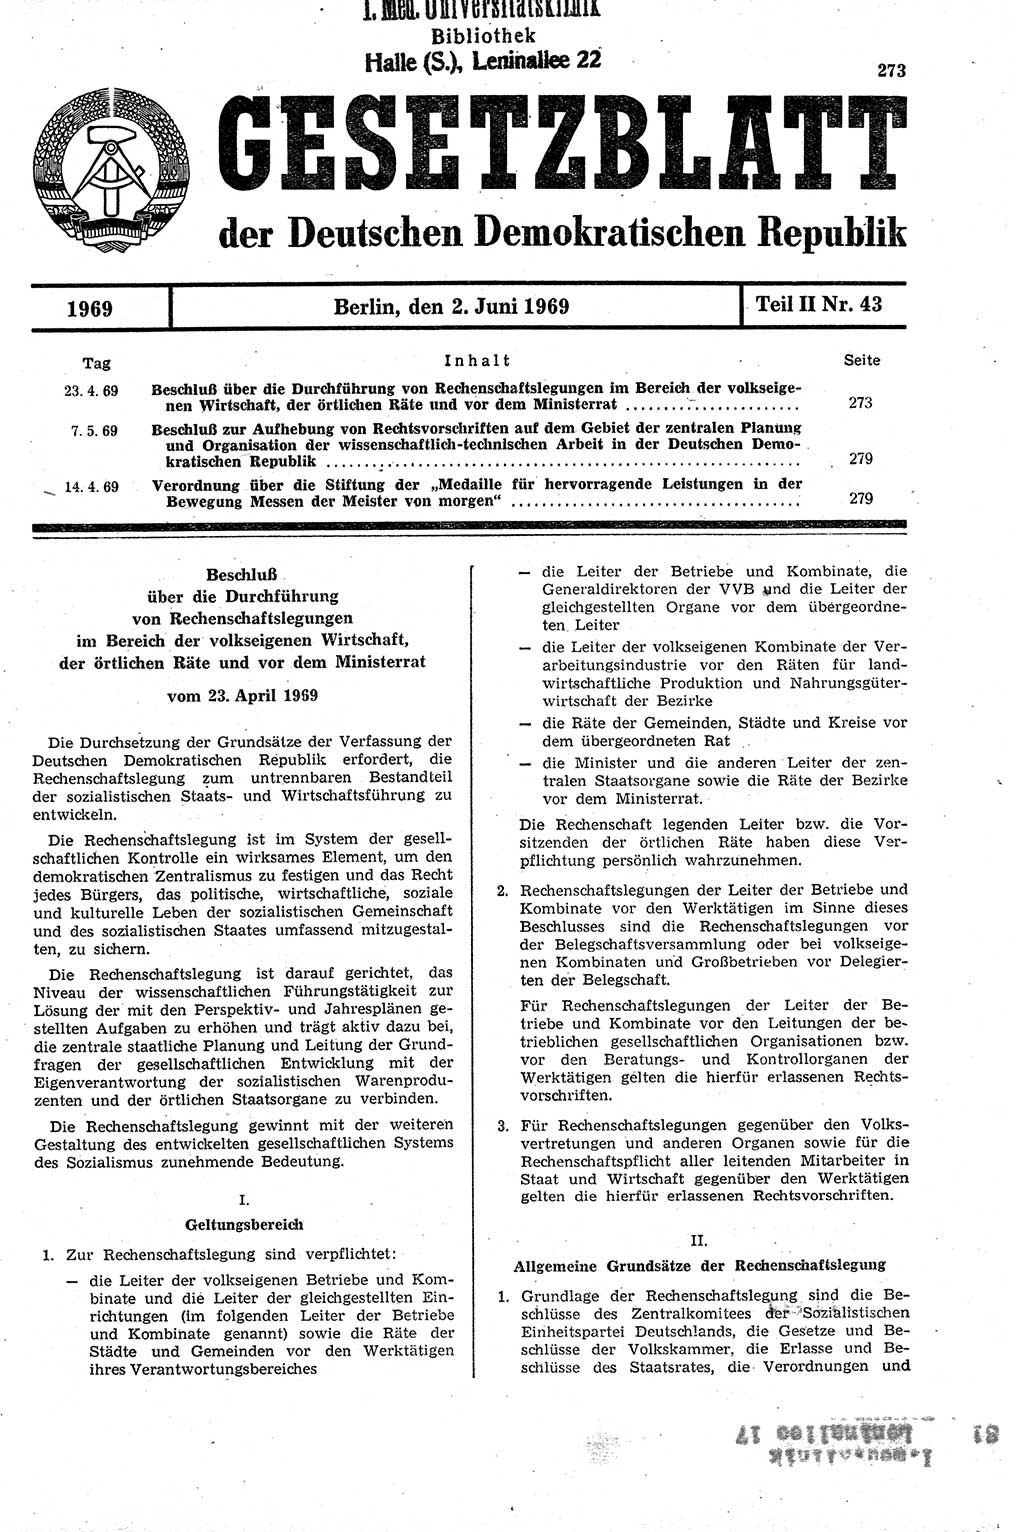 Gesetzblatt (GBl.) der Deutschen Demokratischen Republik (DDR) Teil ⅠⅠ 1969, Seite 273 (GBl. DDR ⅠⅠ 1969, S. 273)